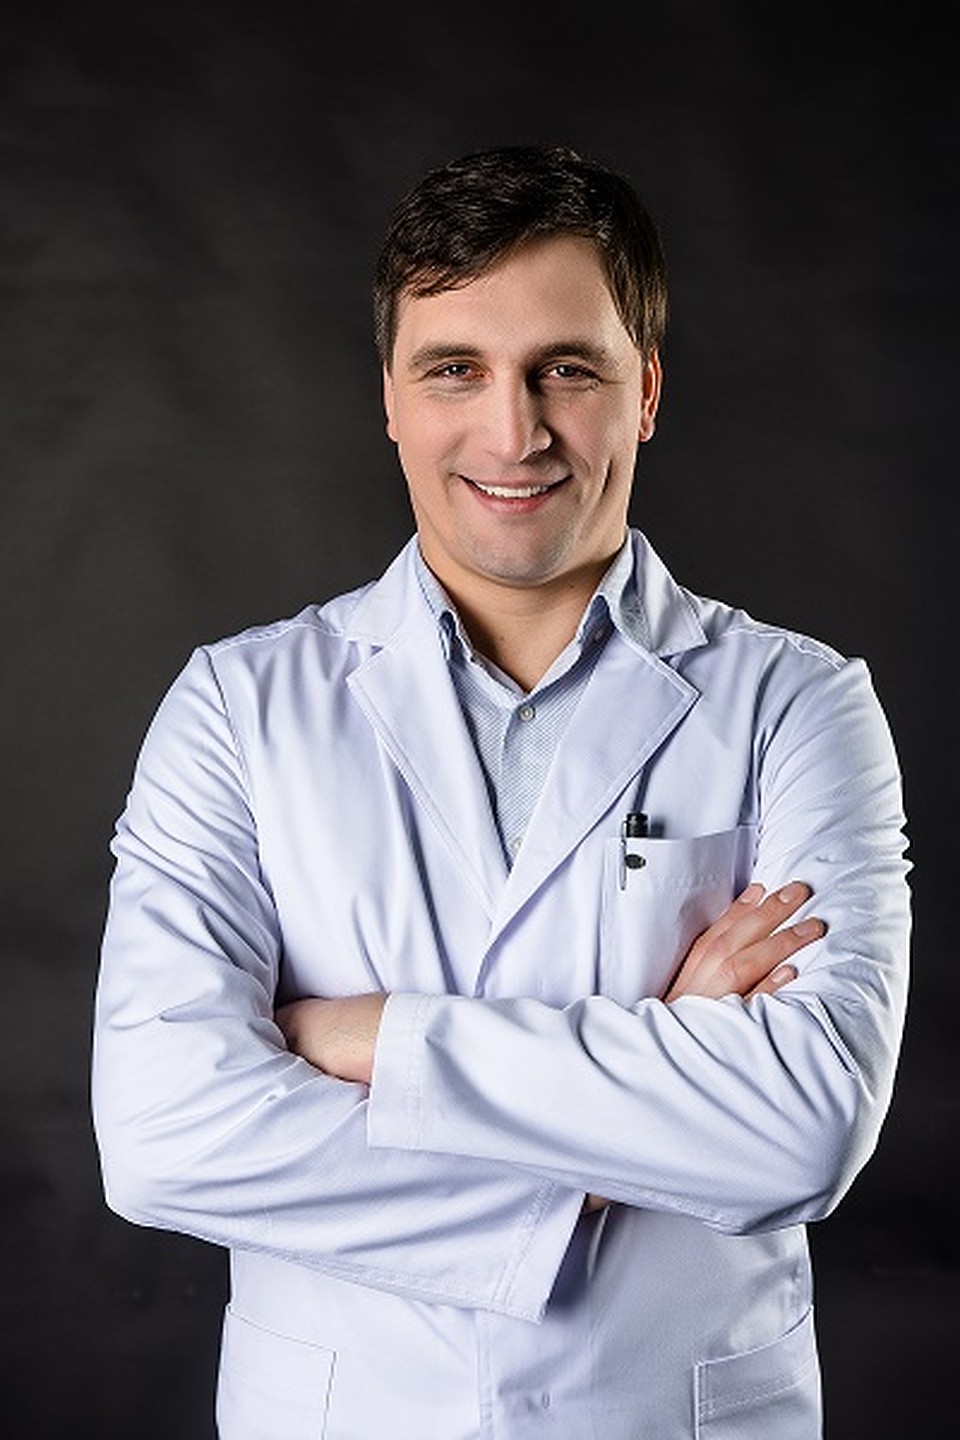 Максим Нестеренко, пластический хирург, победитель Международной премии «Грация» в номинациях за лучшую ринопластику и лучшую маммопластику. 